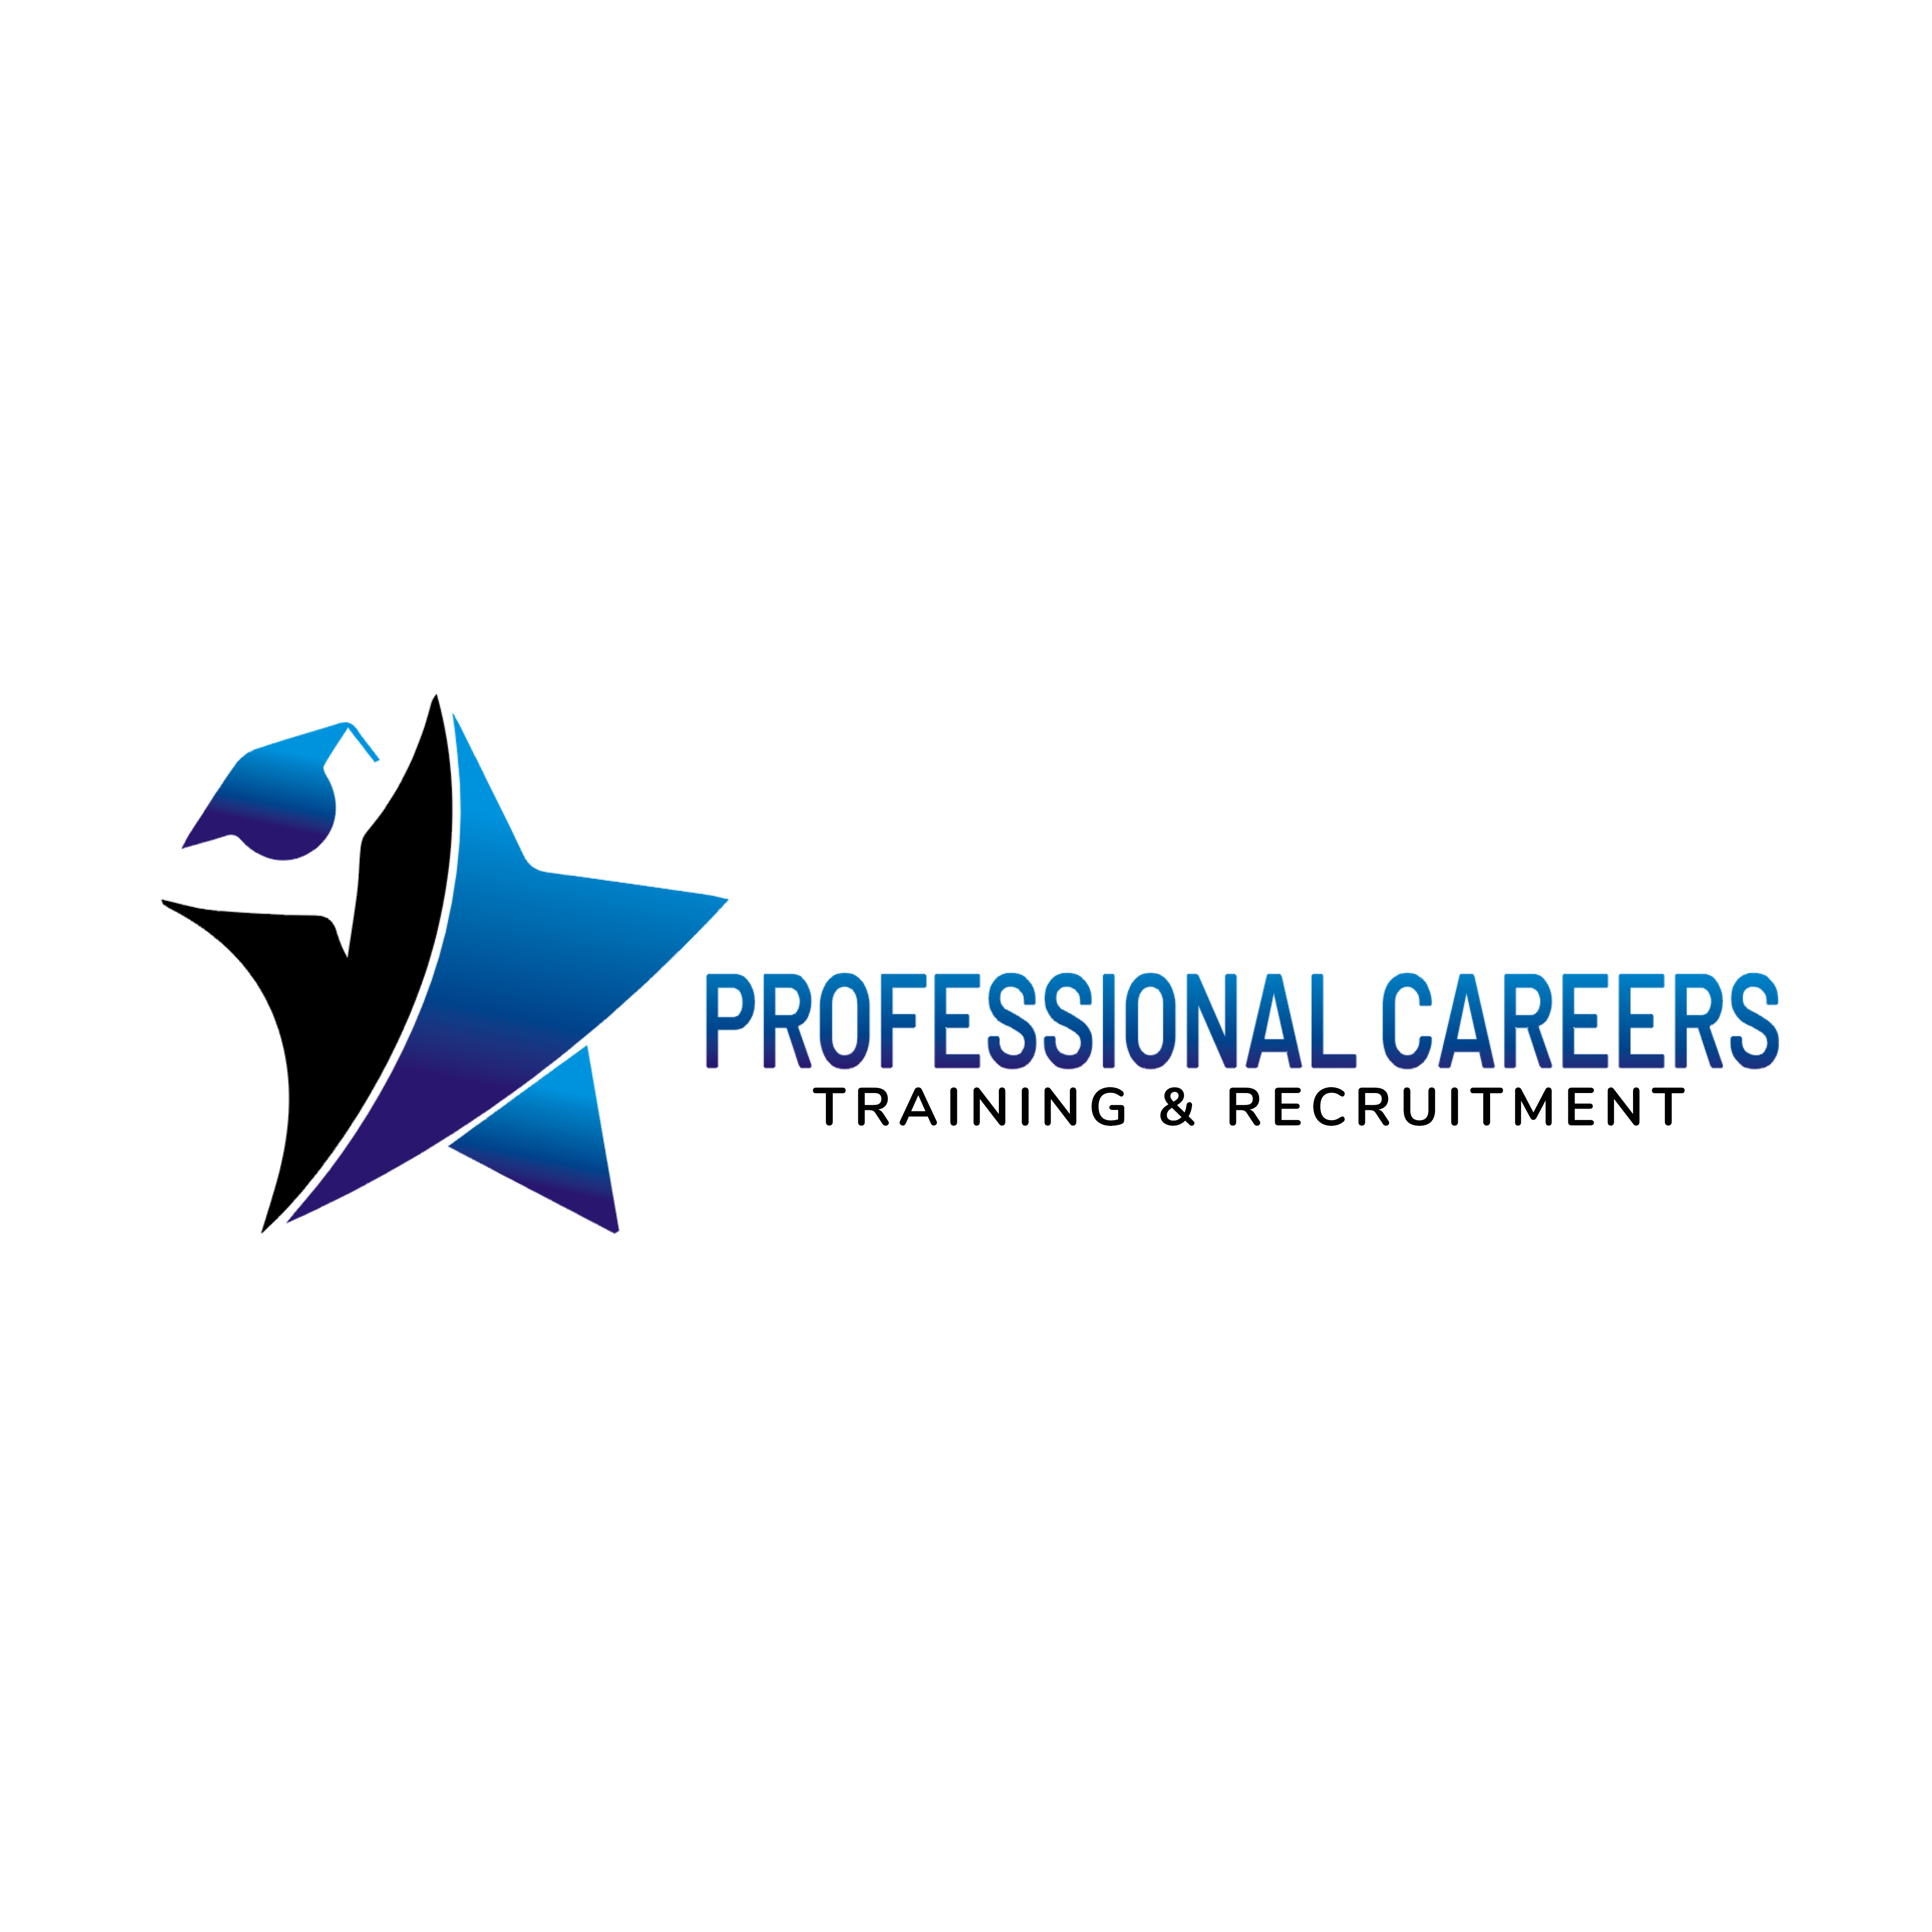 Professional Careers Training & Recruitment